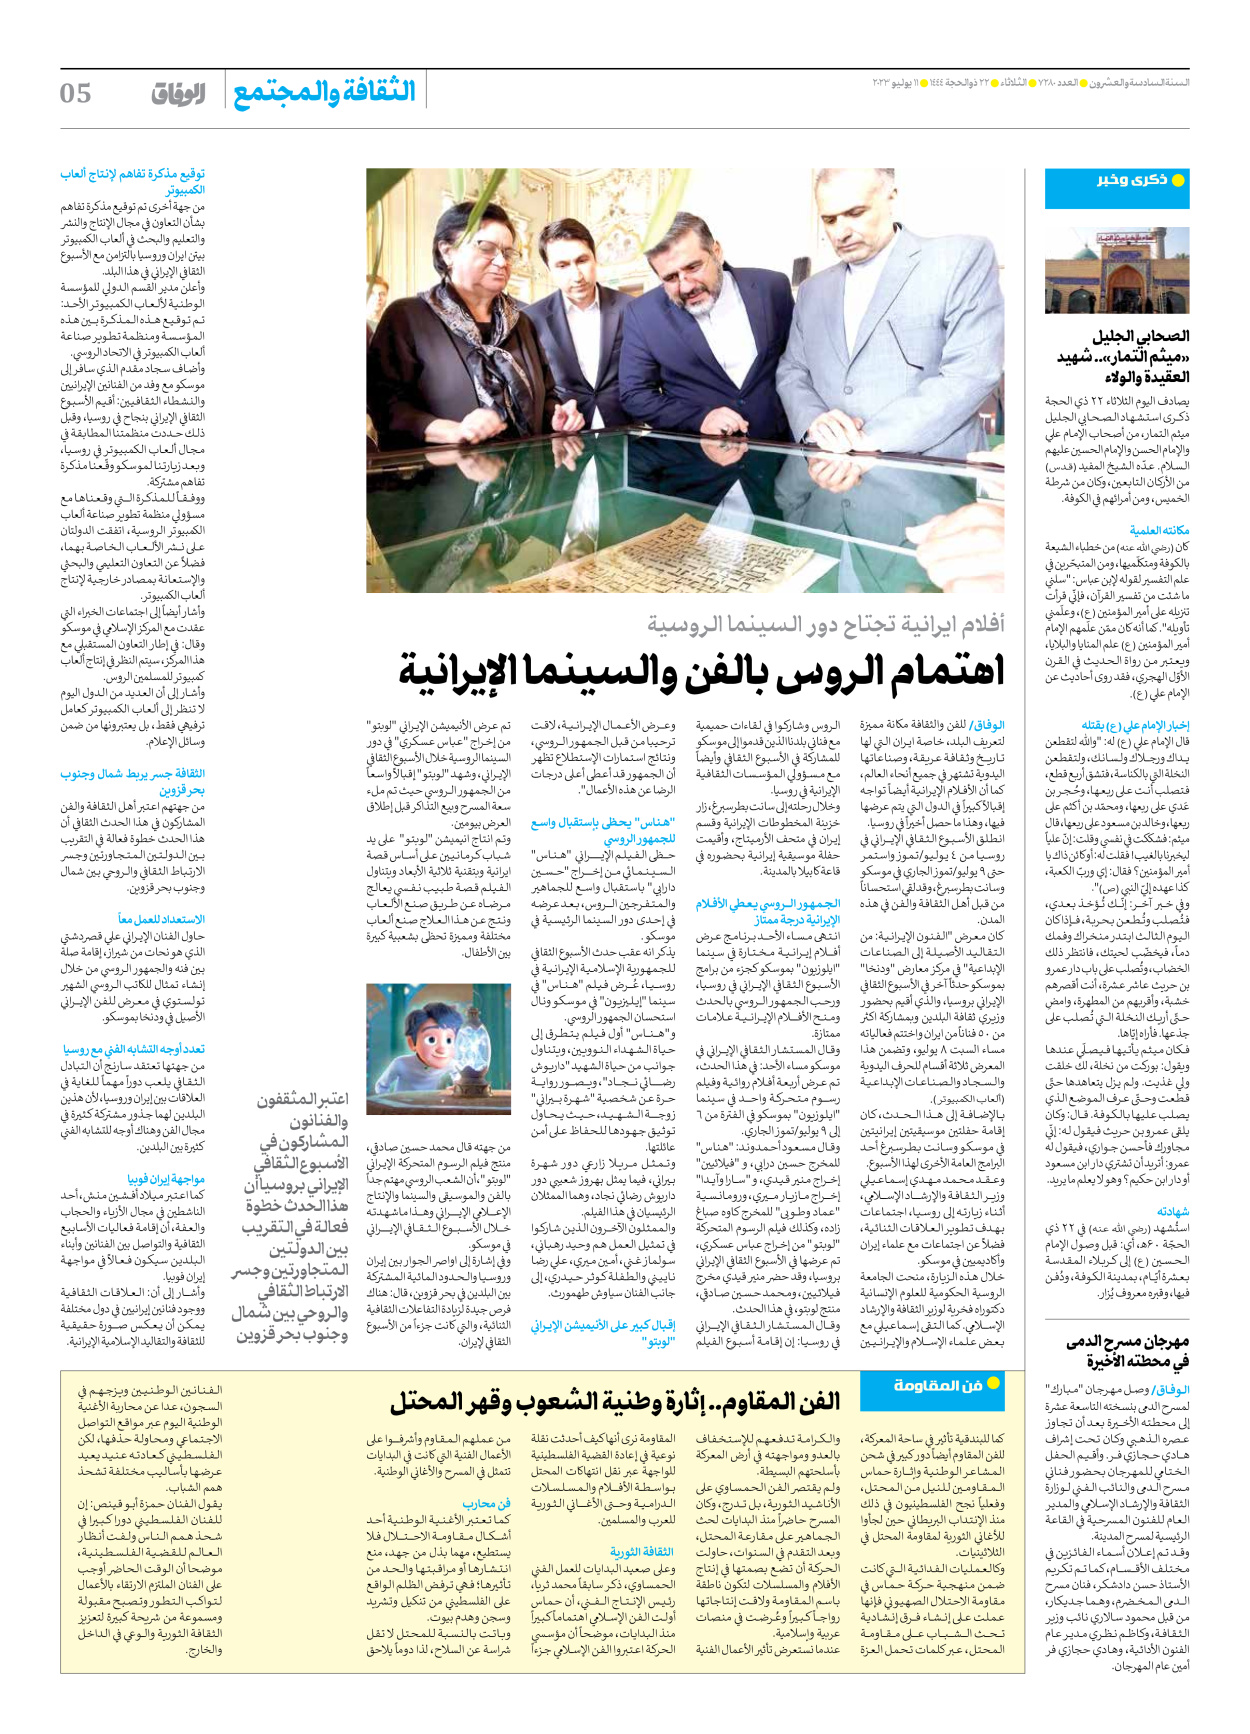 صحیفة ایران الدولیة الوفاق - العدد سبعة آلاف ومائتان وثمانون - ١١ يوليو ٢٠٢٣ - الصفحة ٥